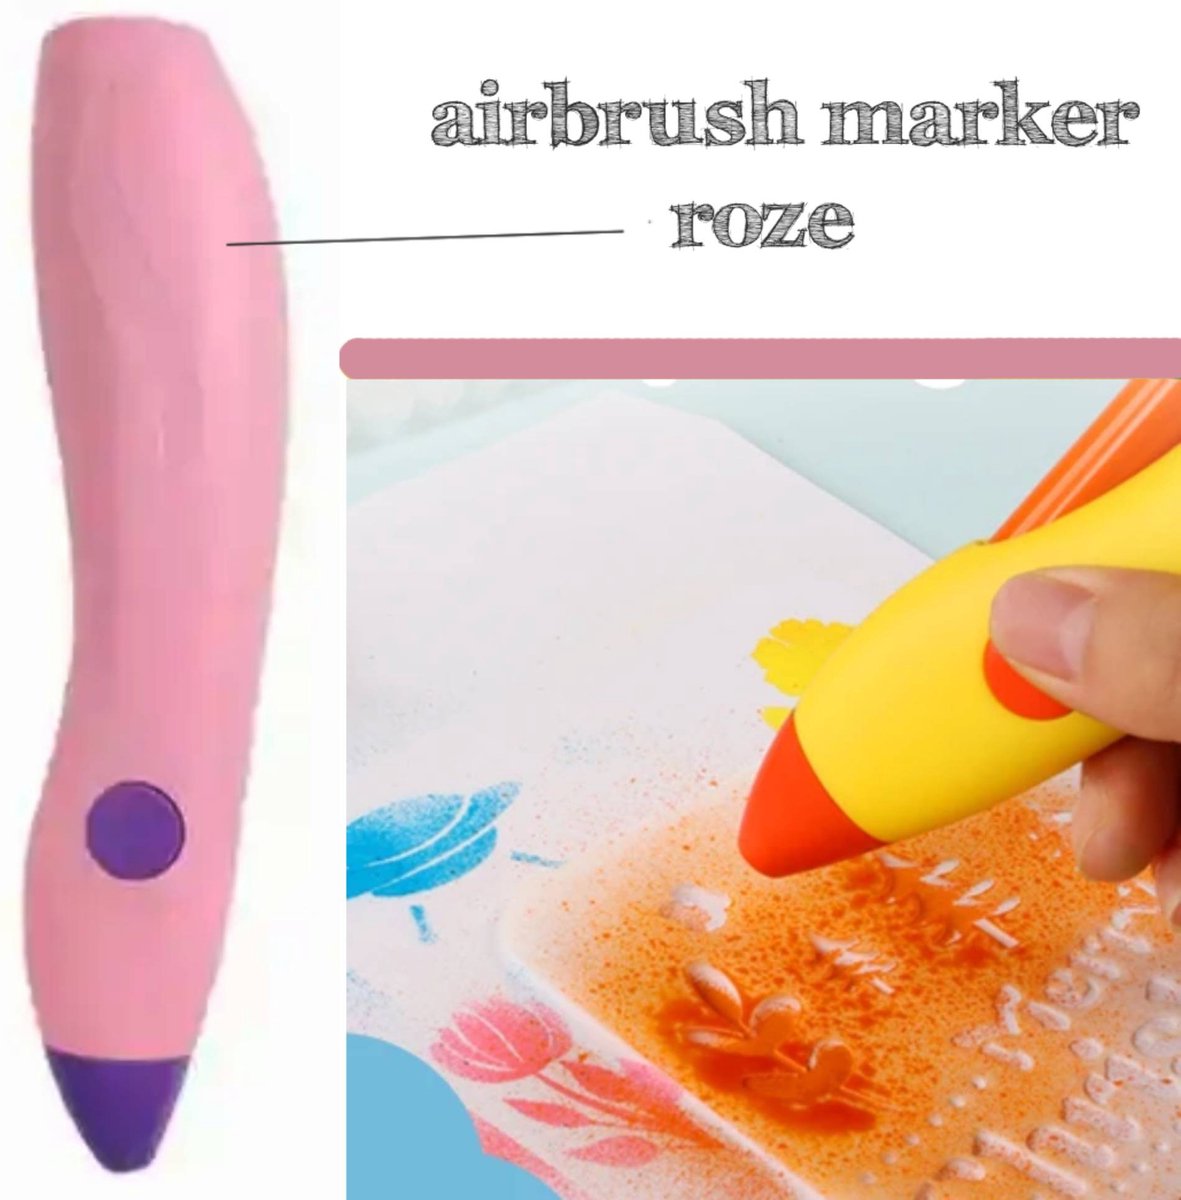 Airbrush Pen Roze Oplaadbare Spuitpen met 12 Aquarel Markers Spray jouw eigen kunstwerk met stiften Wasbare Creatieve Blaas Airbrush Marker Elektrische Draadloze Tekening Speelgoed